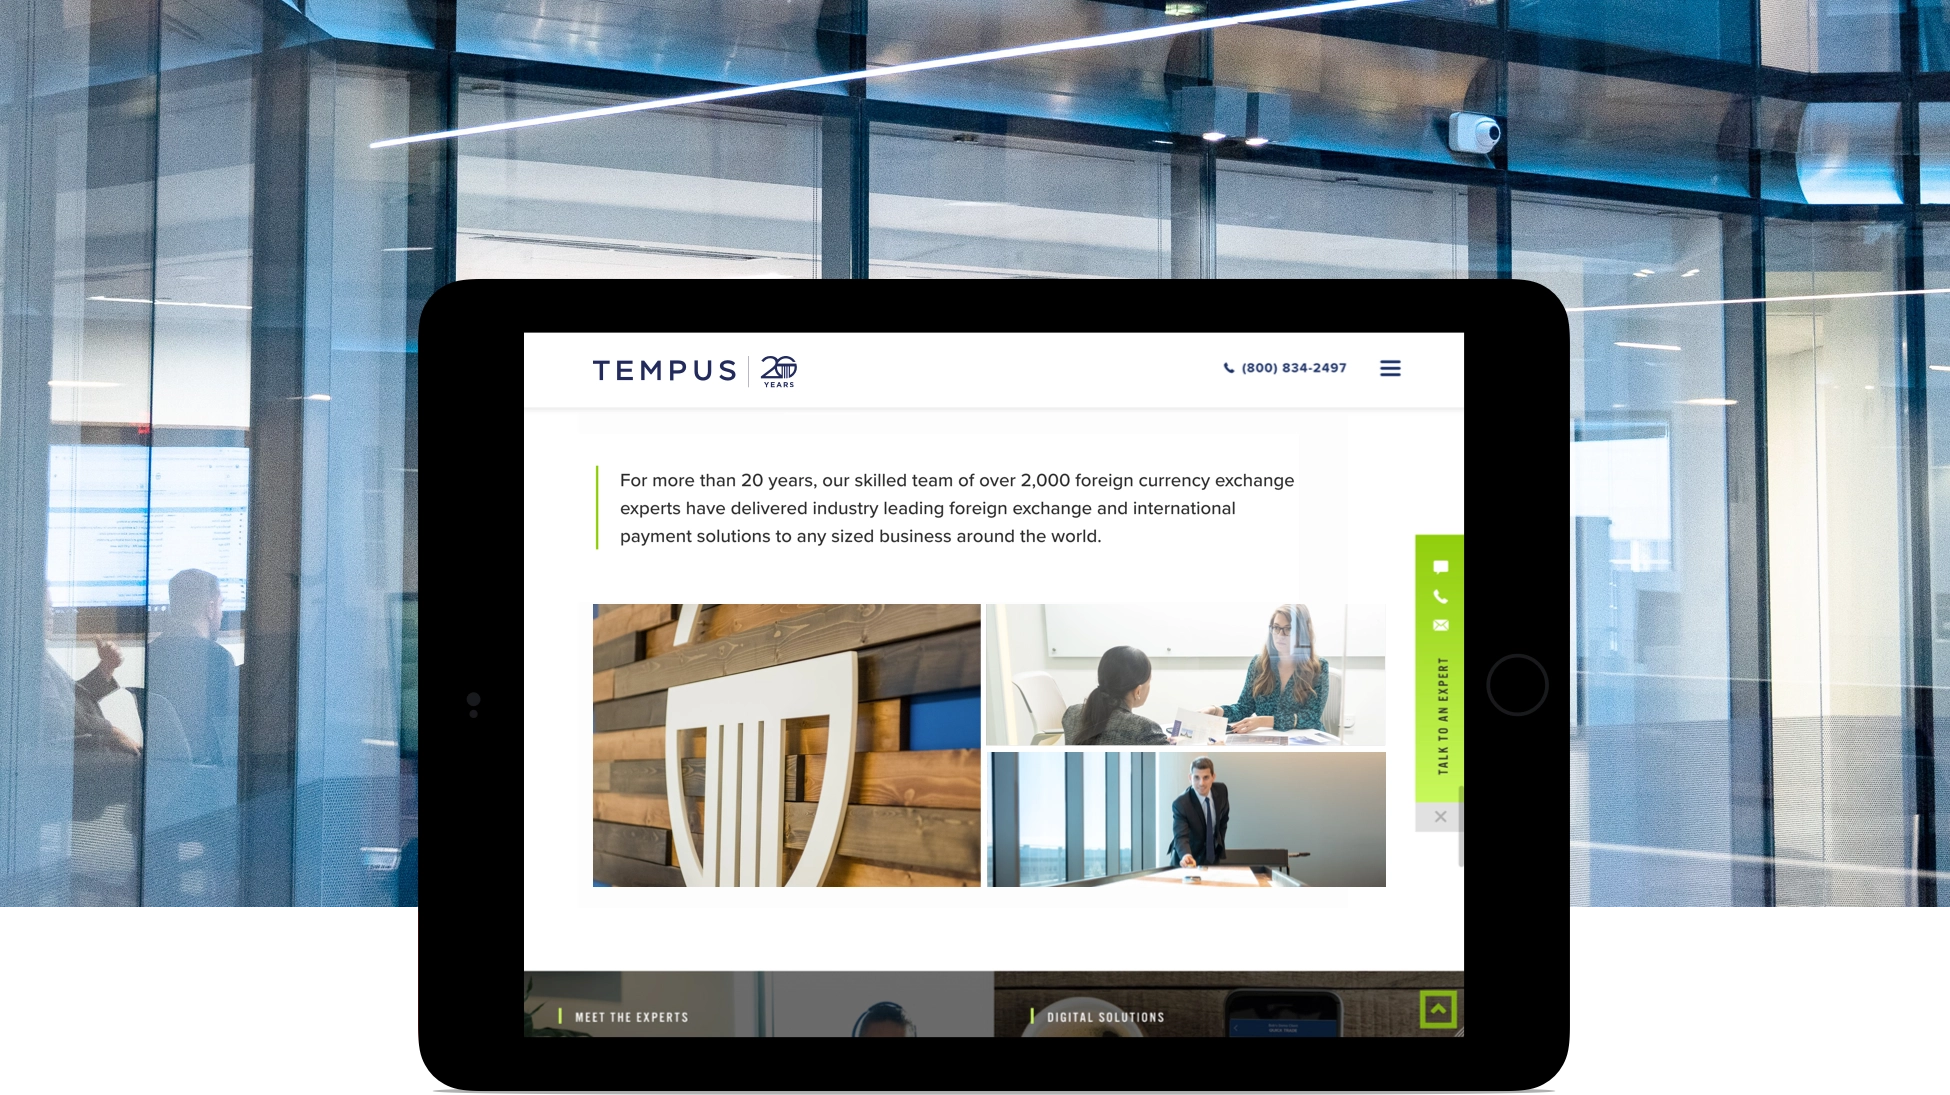 Tempus tablet site view